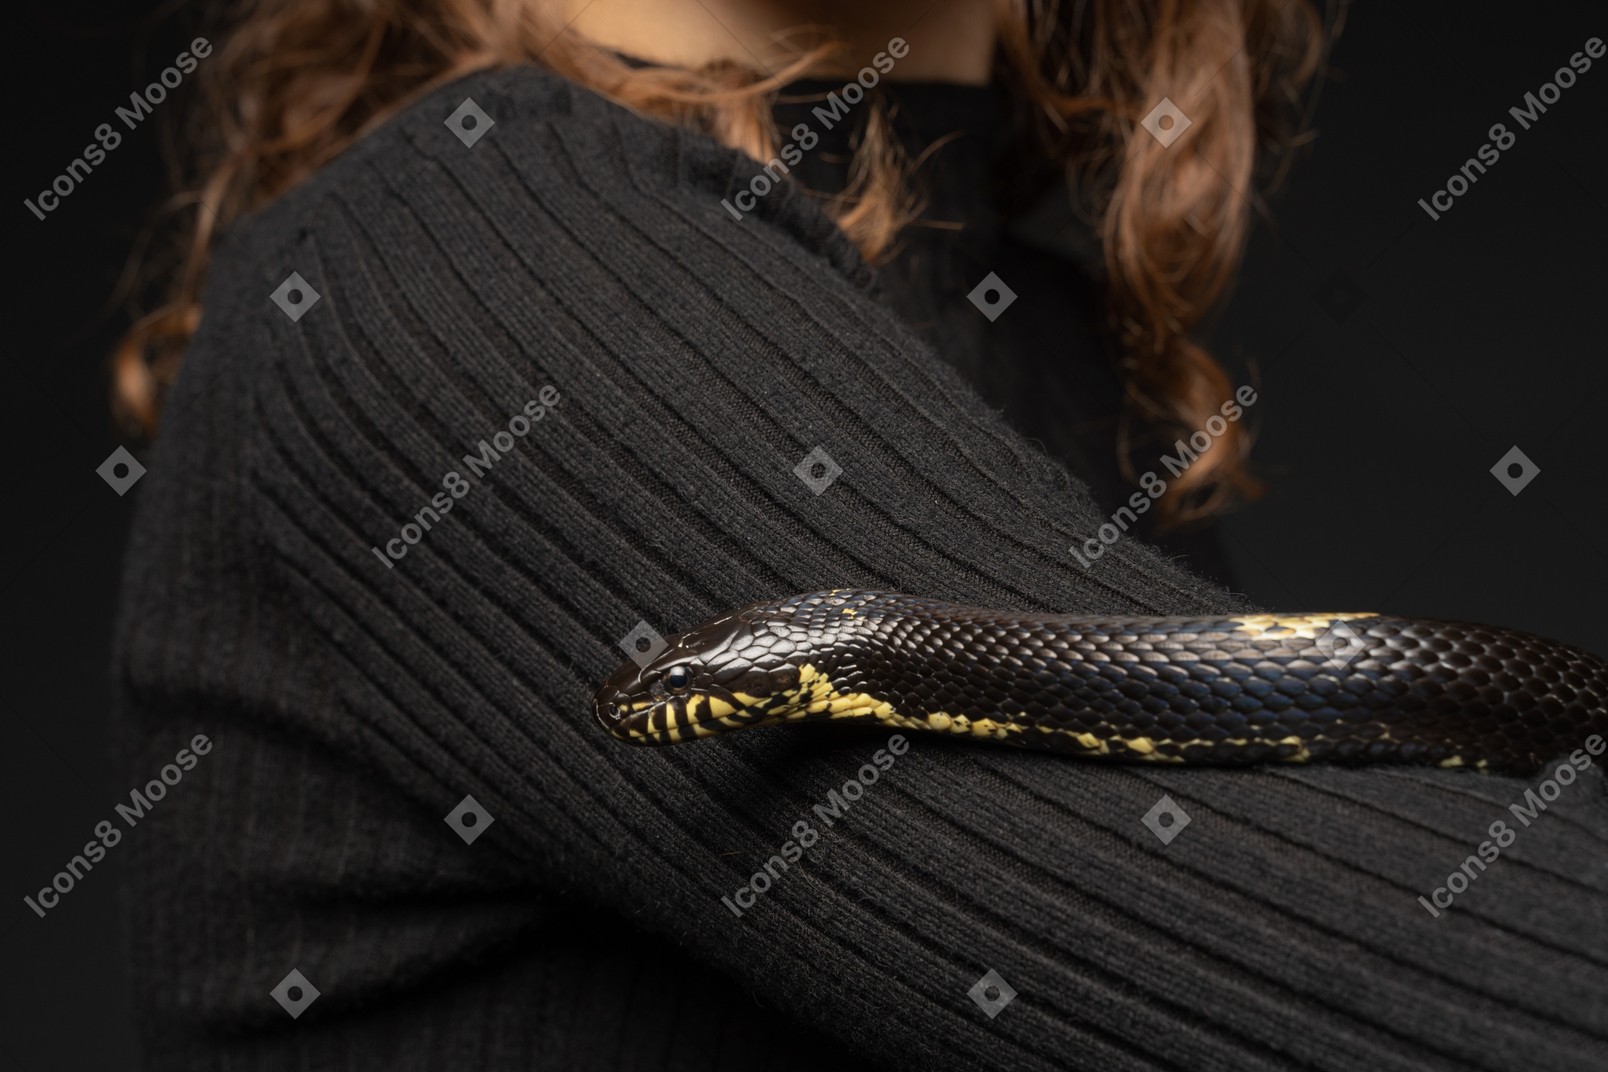 Serpente a strisce nere che curva attorno al collo della giovane donna